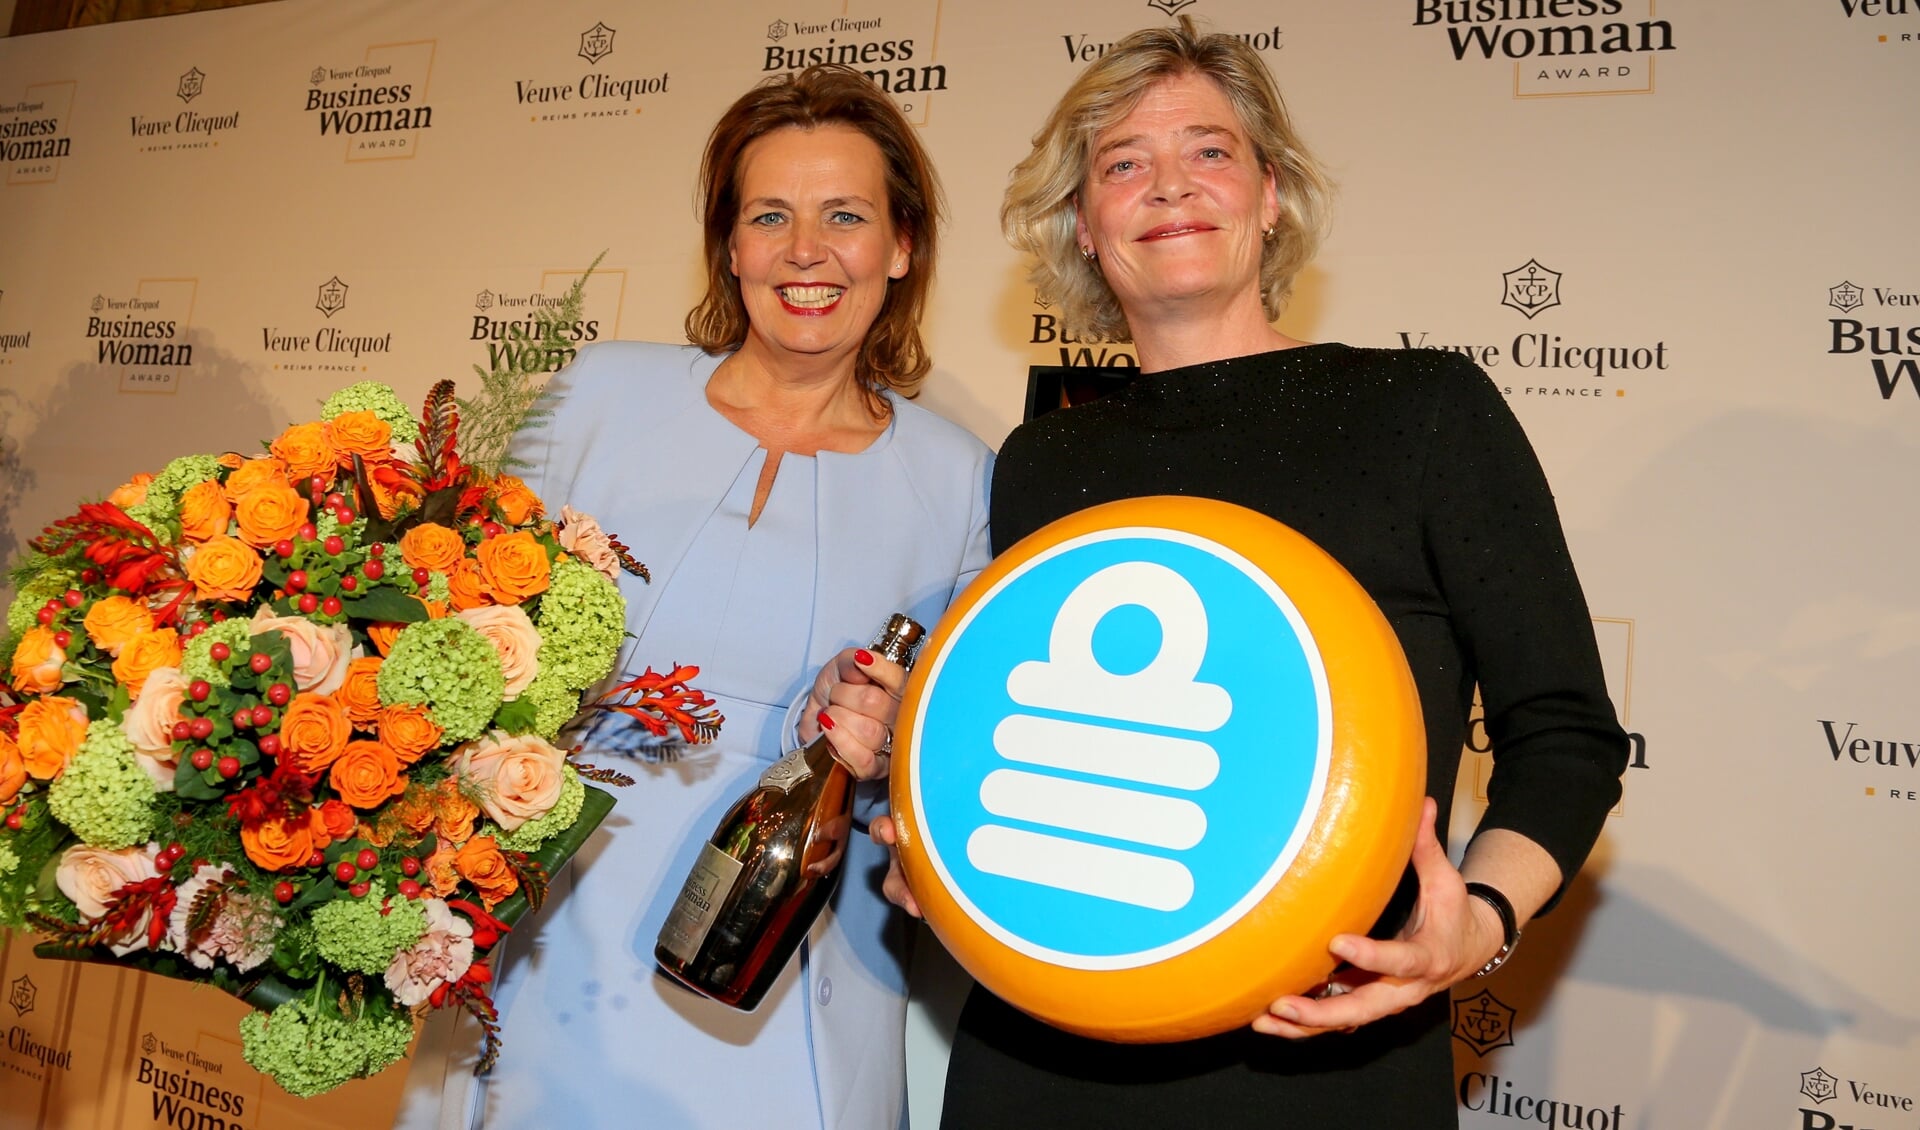 Links Zakenvrouw 2019 Mireille Kaptein, rechts Marry de Gaay Fortman, voorzitter van het bestuur van Topvrouwen.nl. 